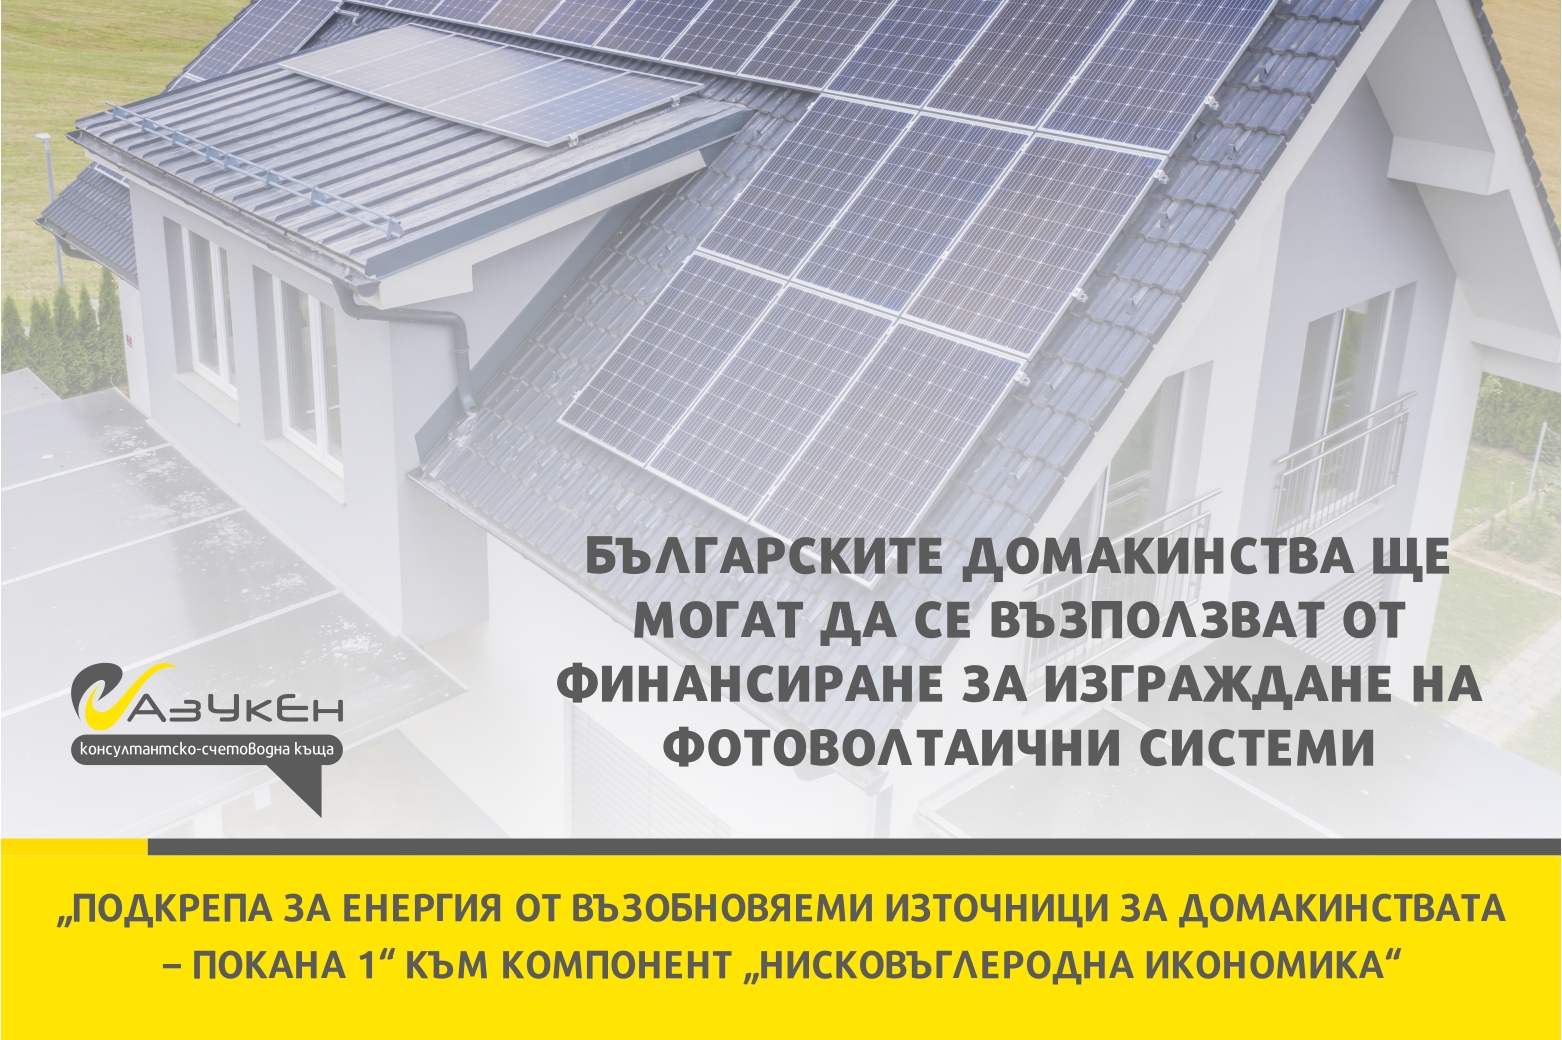 Българските домакинства ще могат да се възползват от финансиране за изграждане на фотоволтаични системи